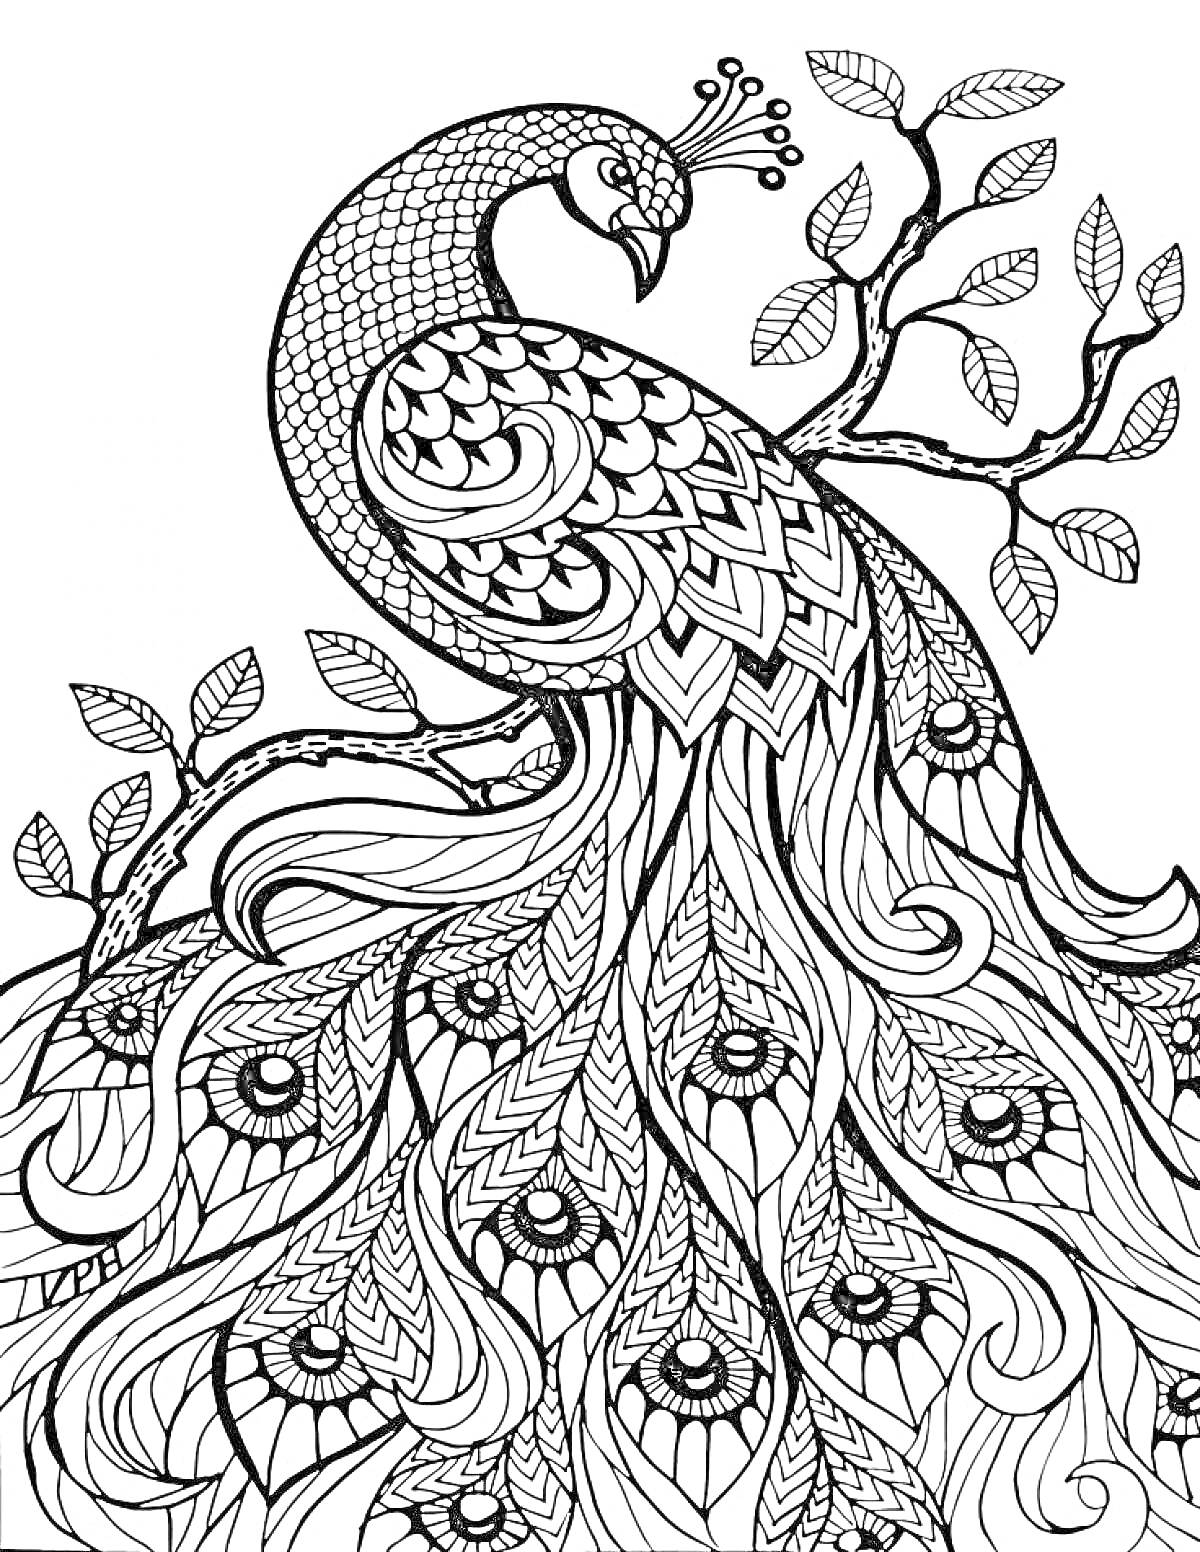 Павлинин на ветви: павлин, ветка дерева с листьями, украшенные перья